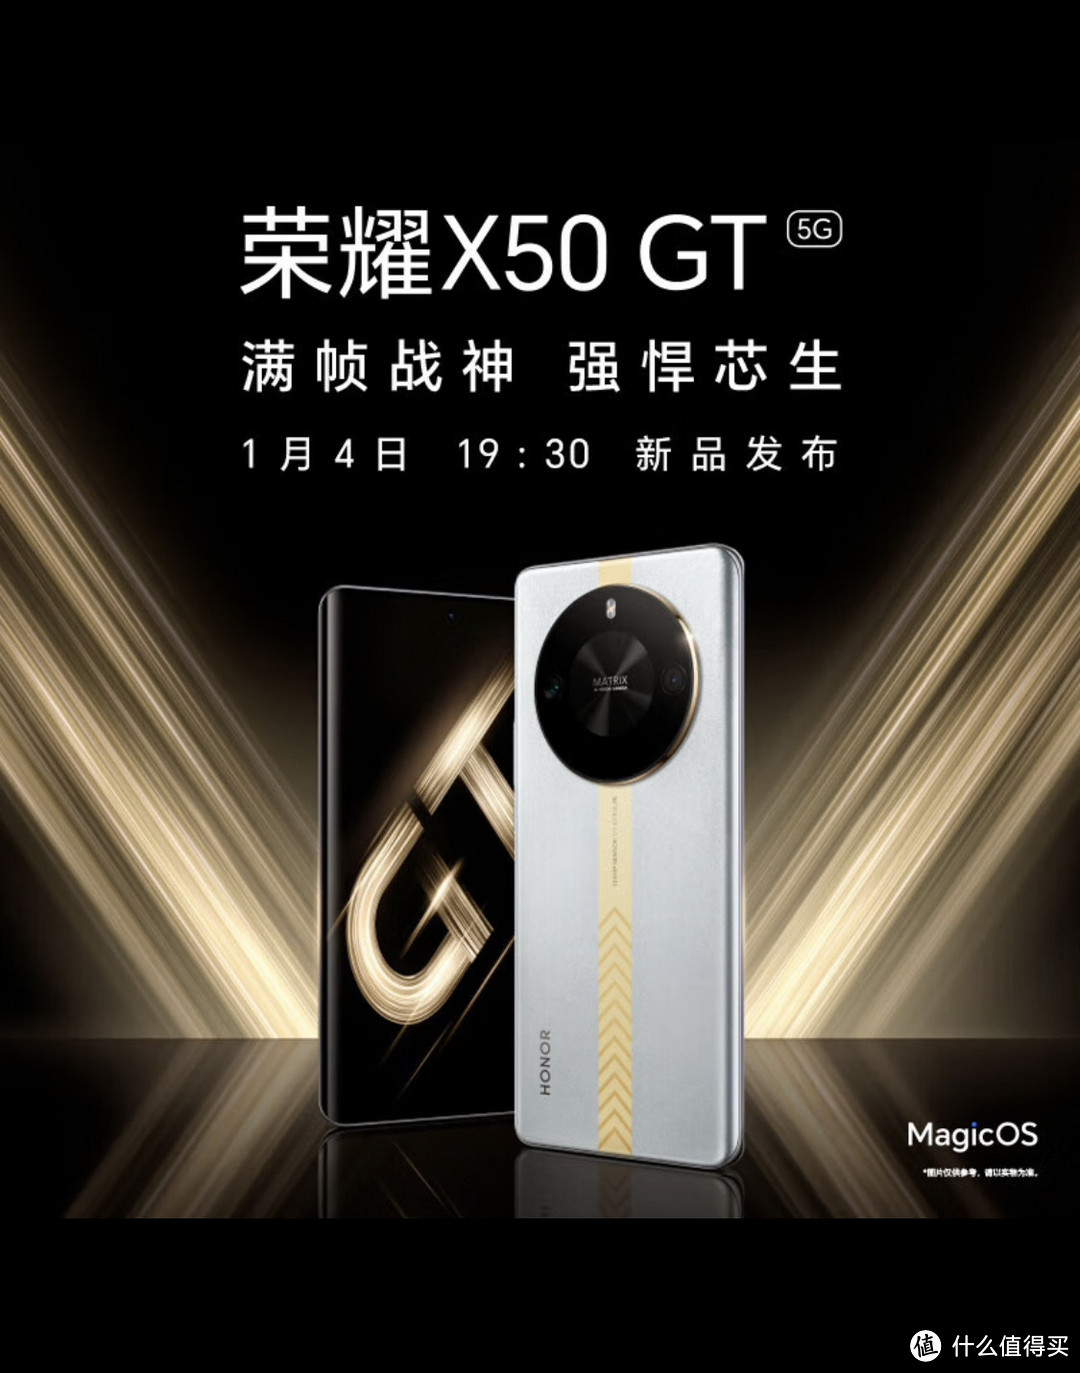 ￼￼荣耀X50 GT 满帧战神 强悍芯生 1月4日19:30发布 ，这款手机值得你期待吗？你会心动💓吗？